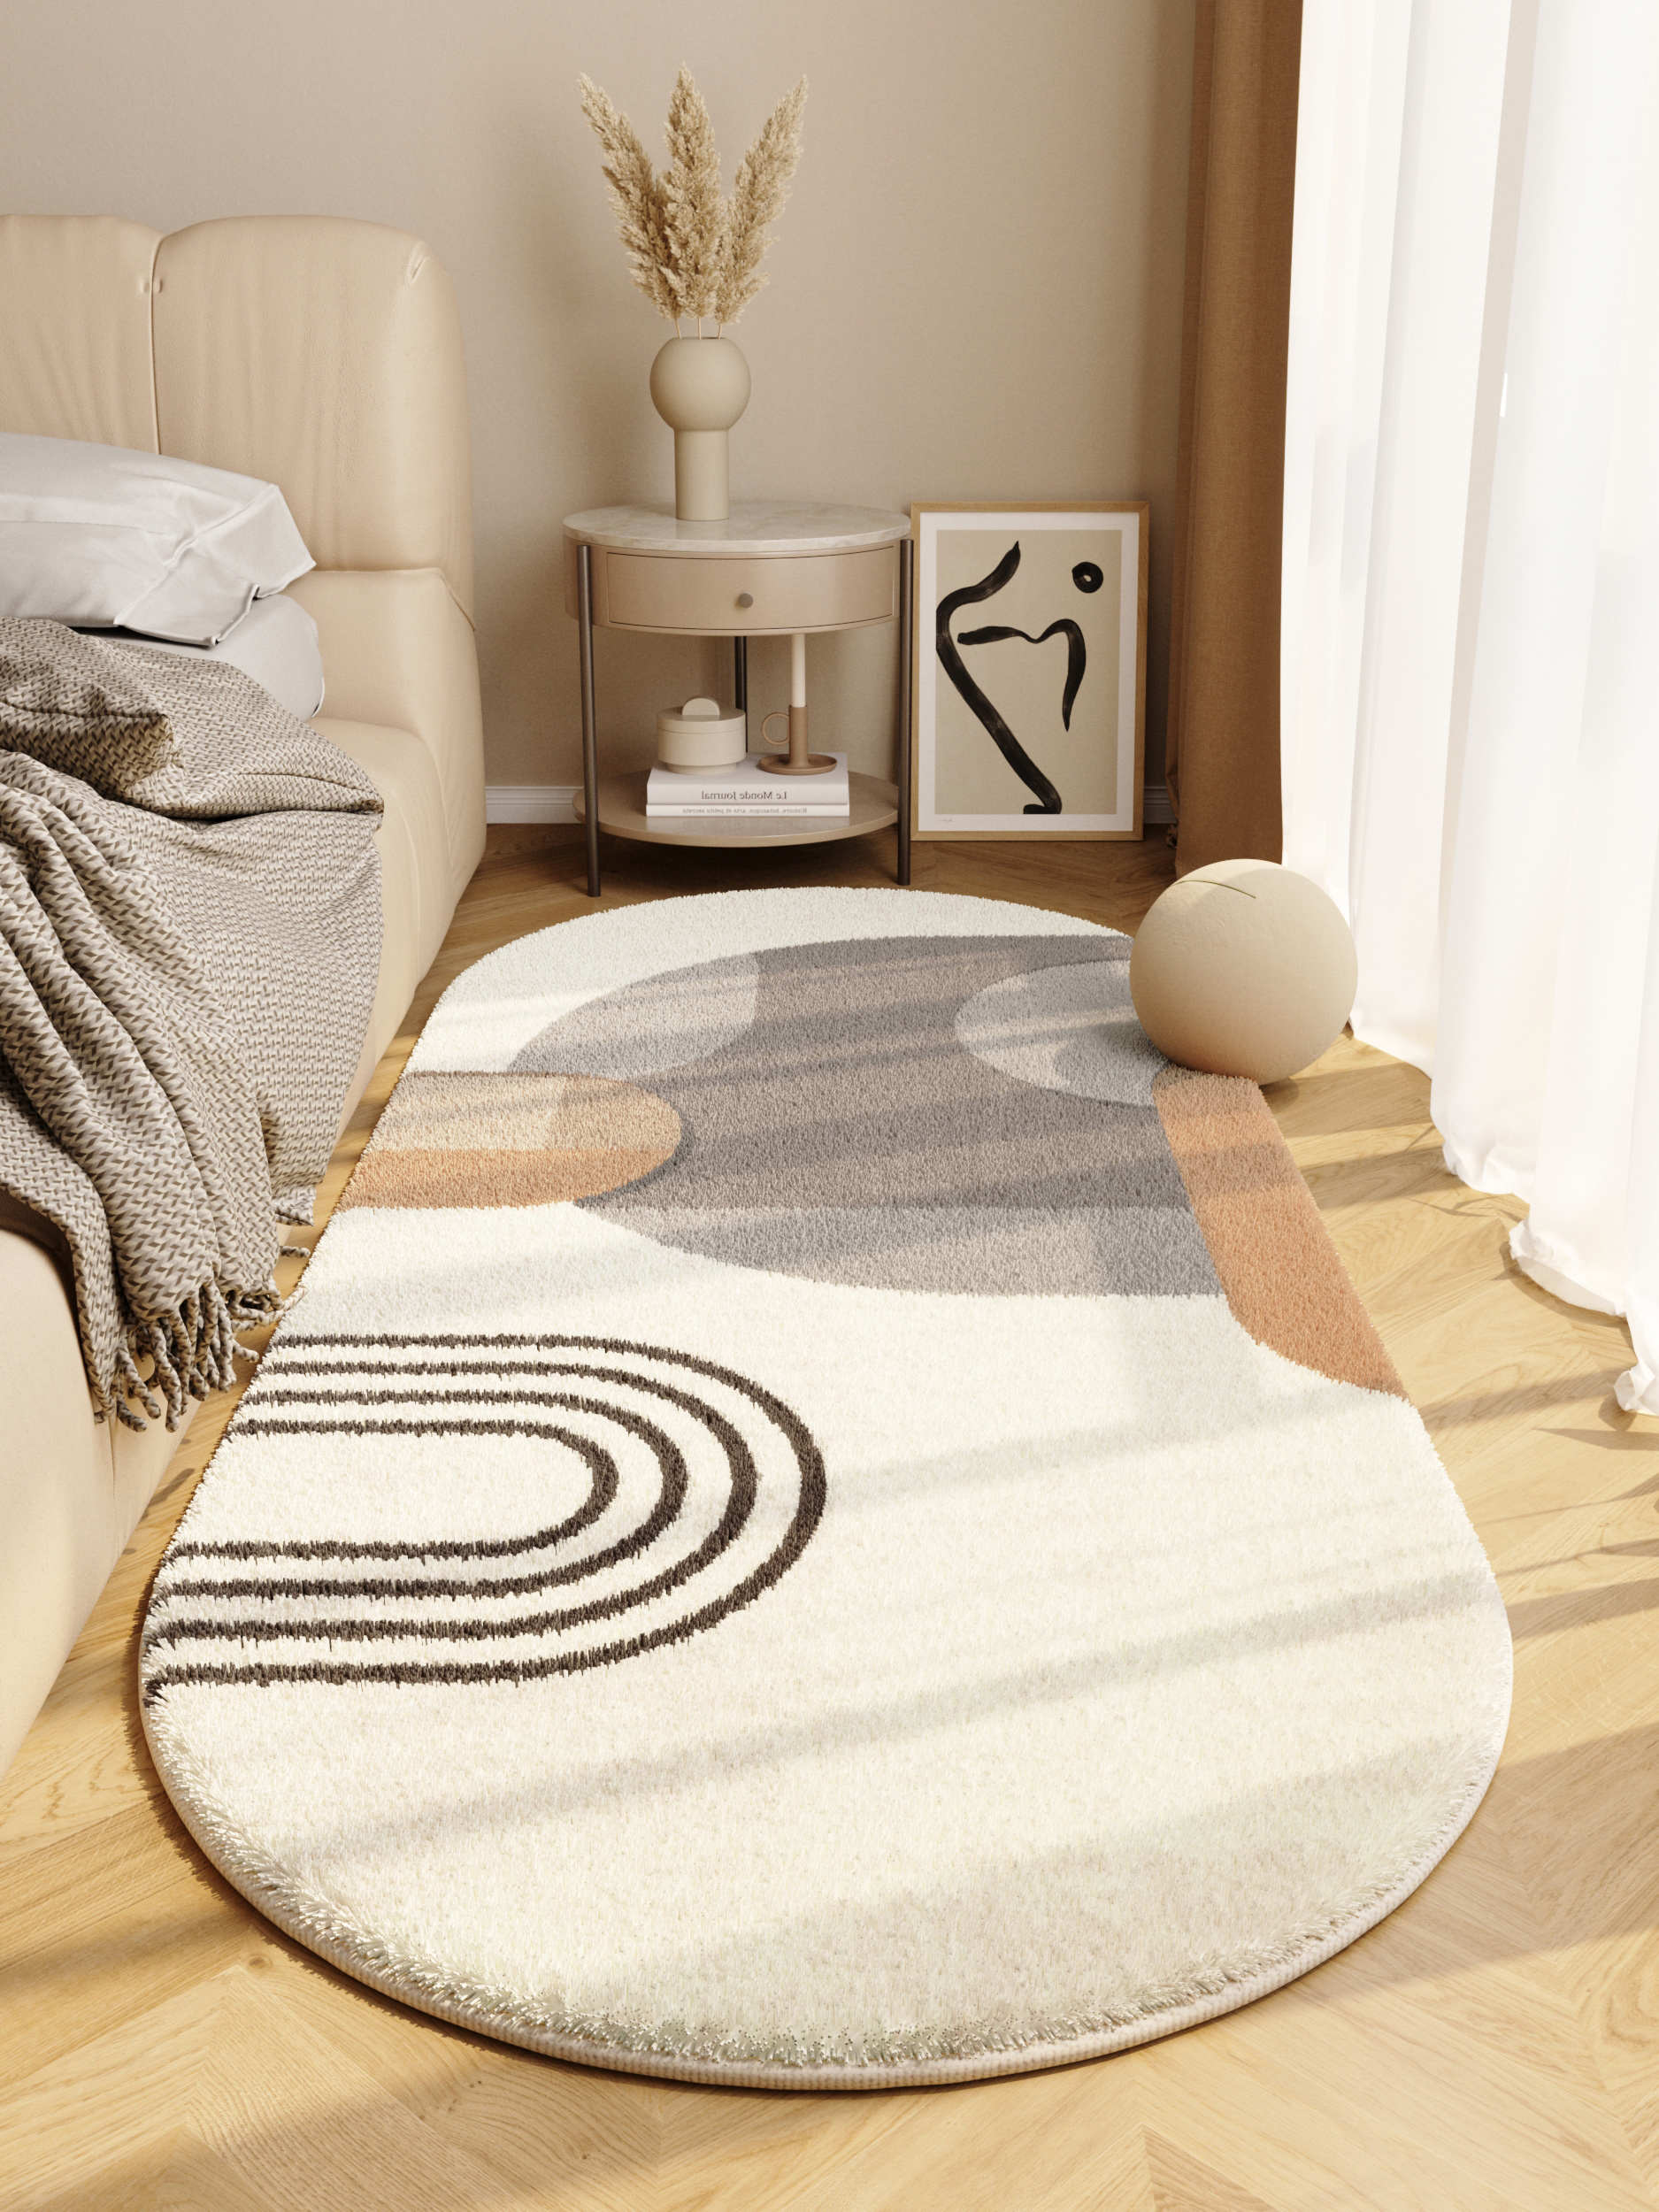 現代簡約臥室地毯橢圓形床邊毯民宿服裝店品質安心